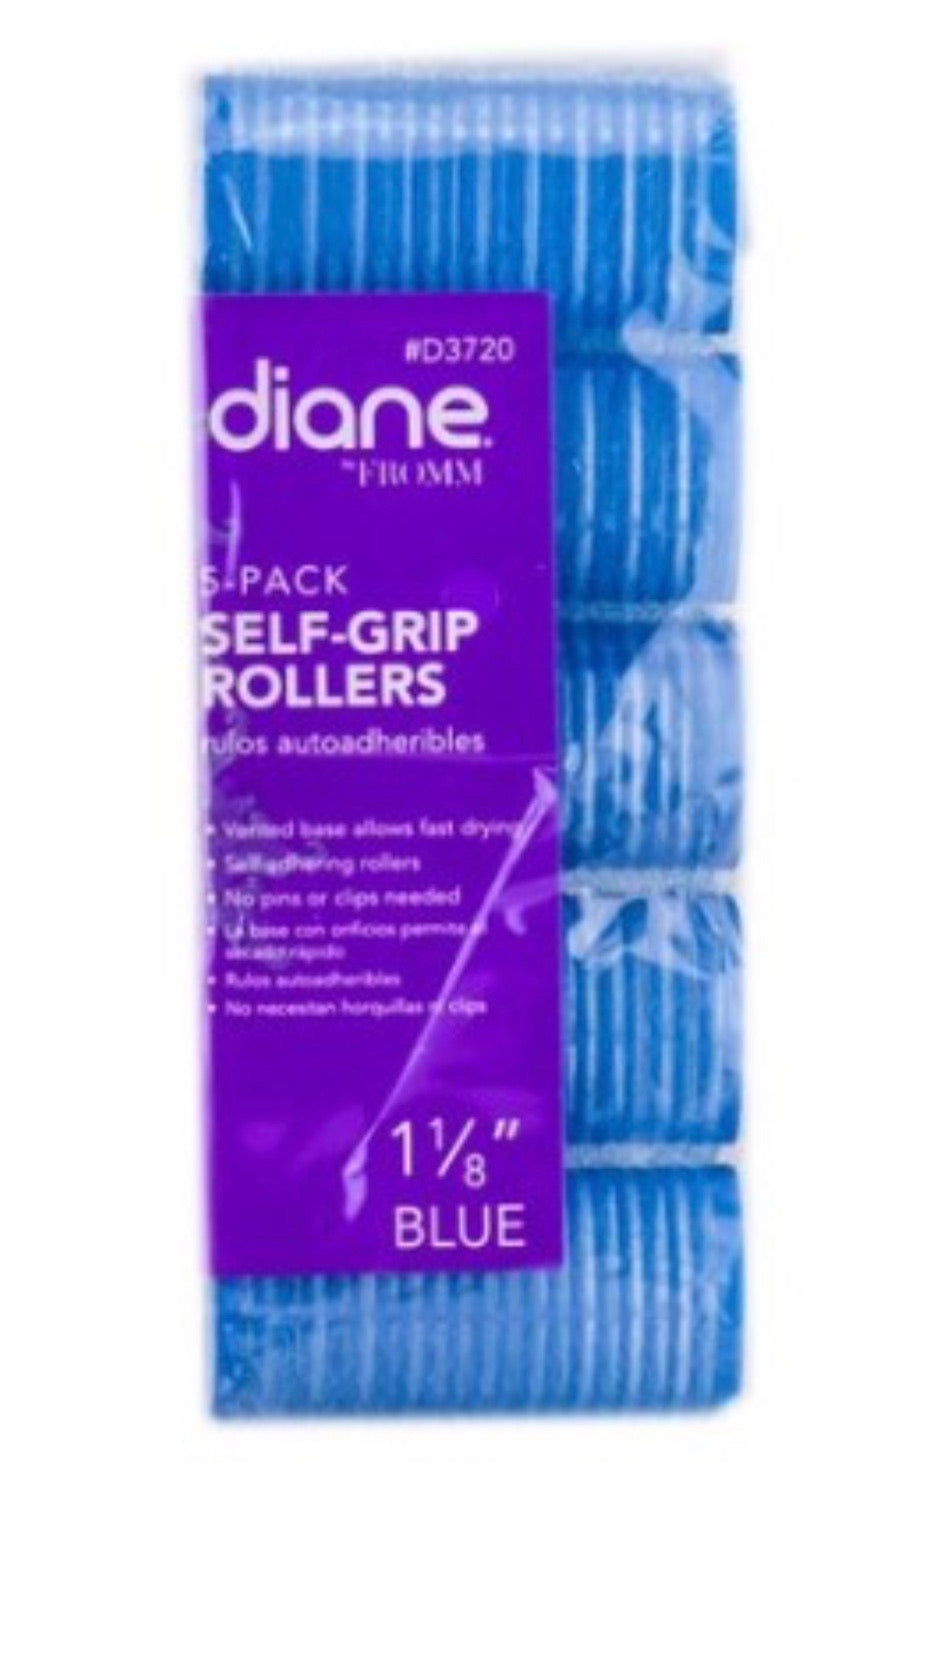 Diane 5-Pack Self Grip Rollers 1 1/18